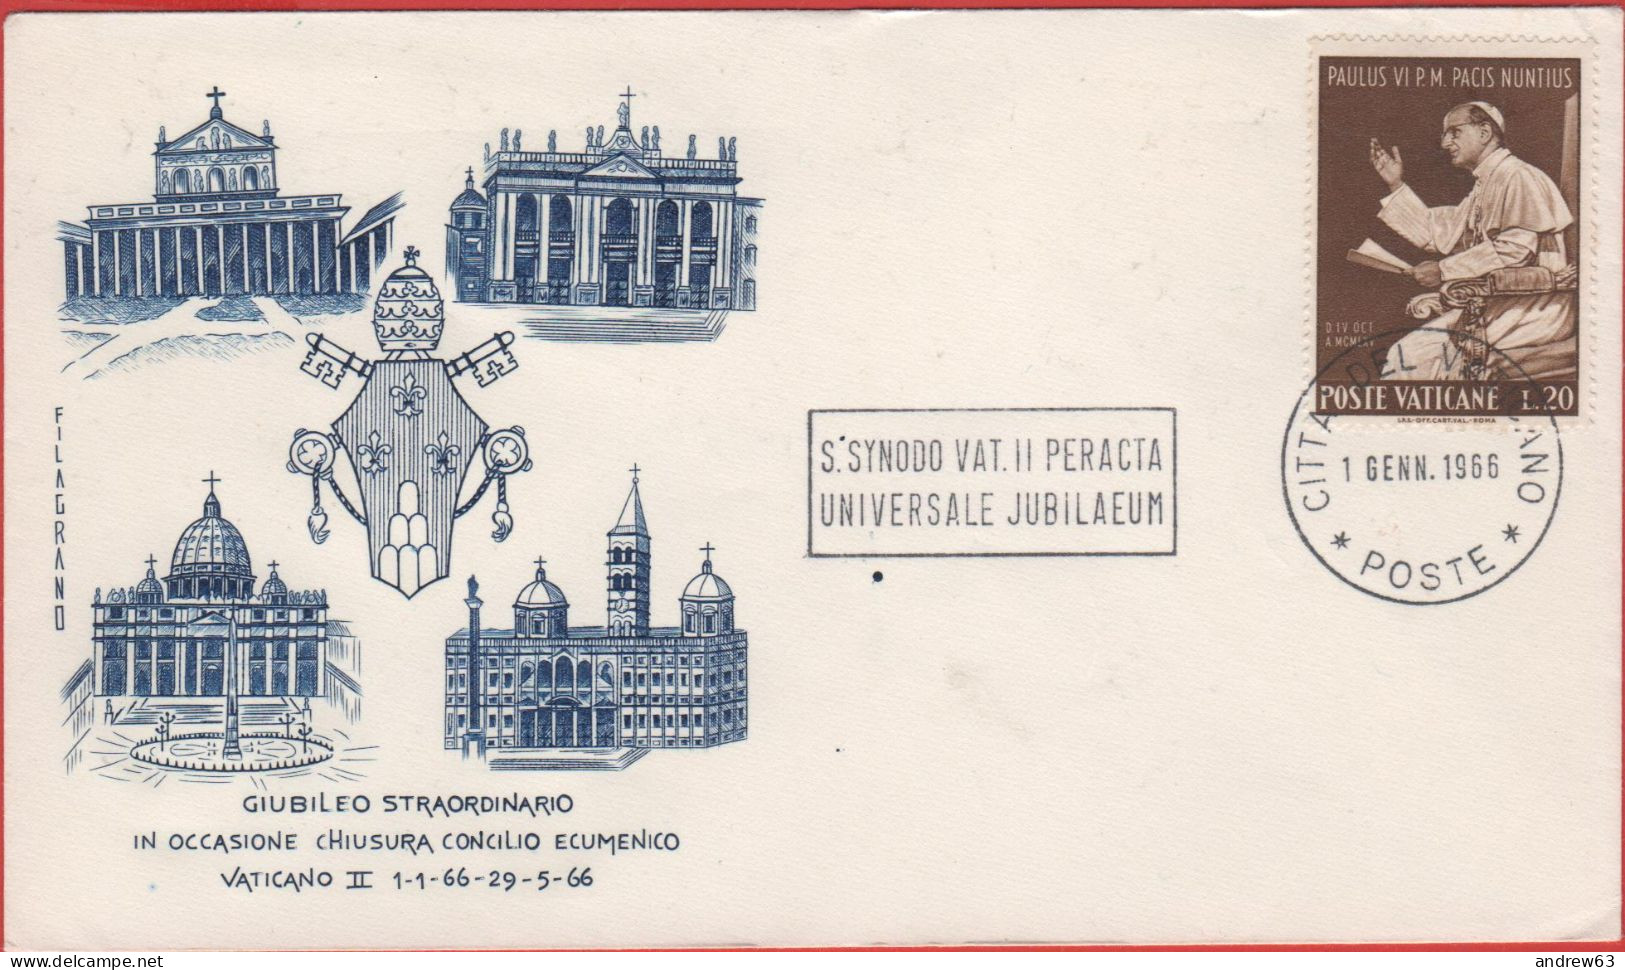 Vaticano - Vatican - Vatikan - 01.01.1966 - Giubileo Straordinario In Occasione Chiusura Concilio Ecumenico Vaticano II - Briefe U. Dokumente